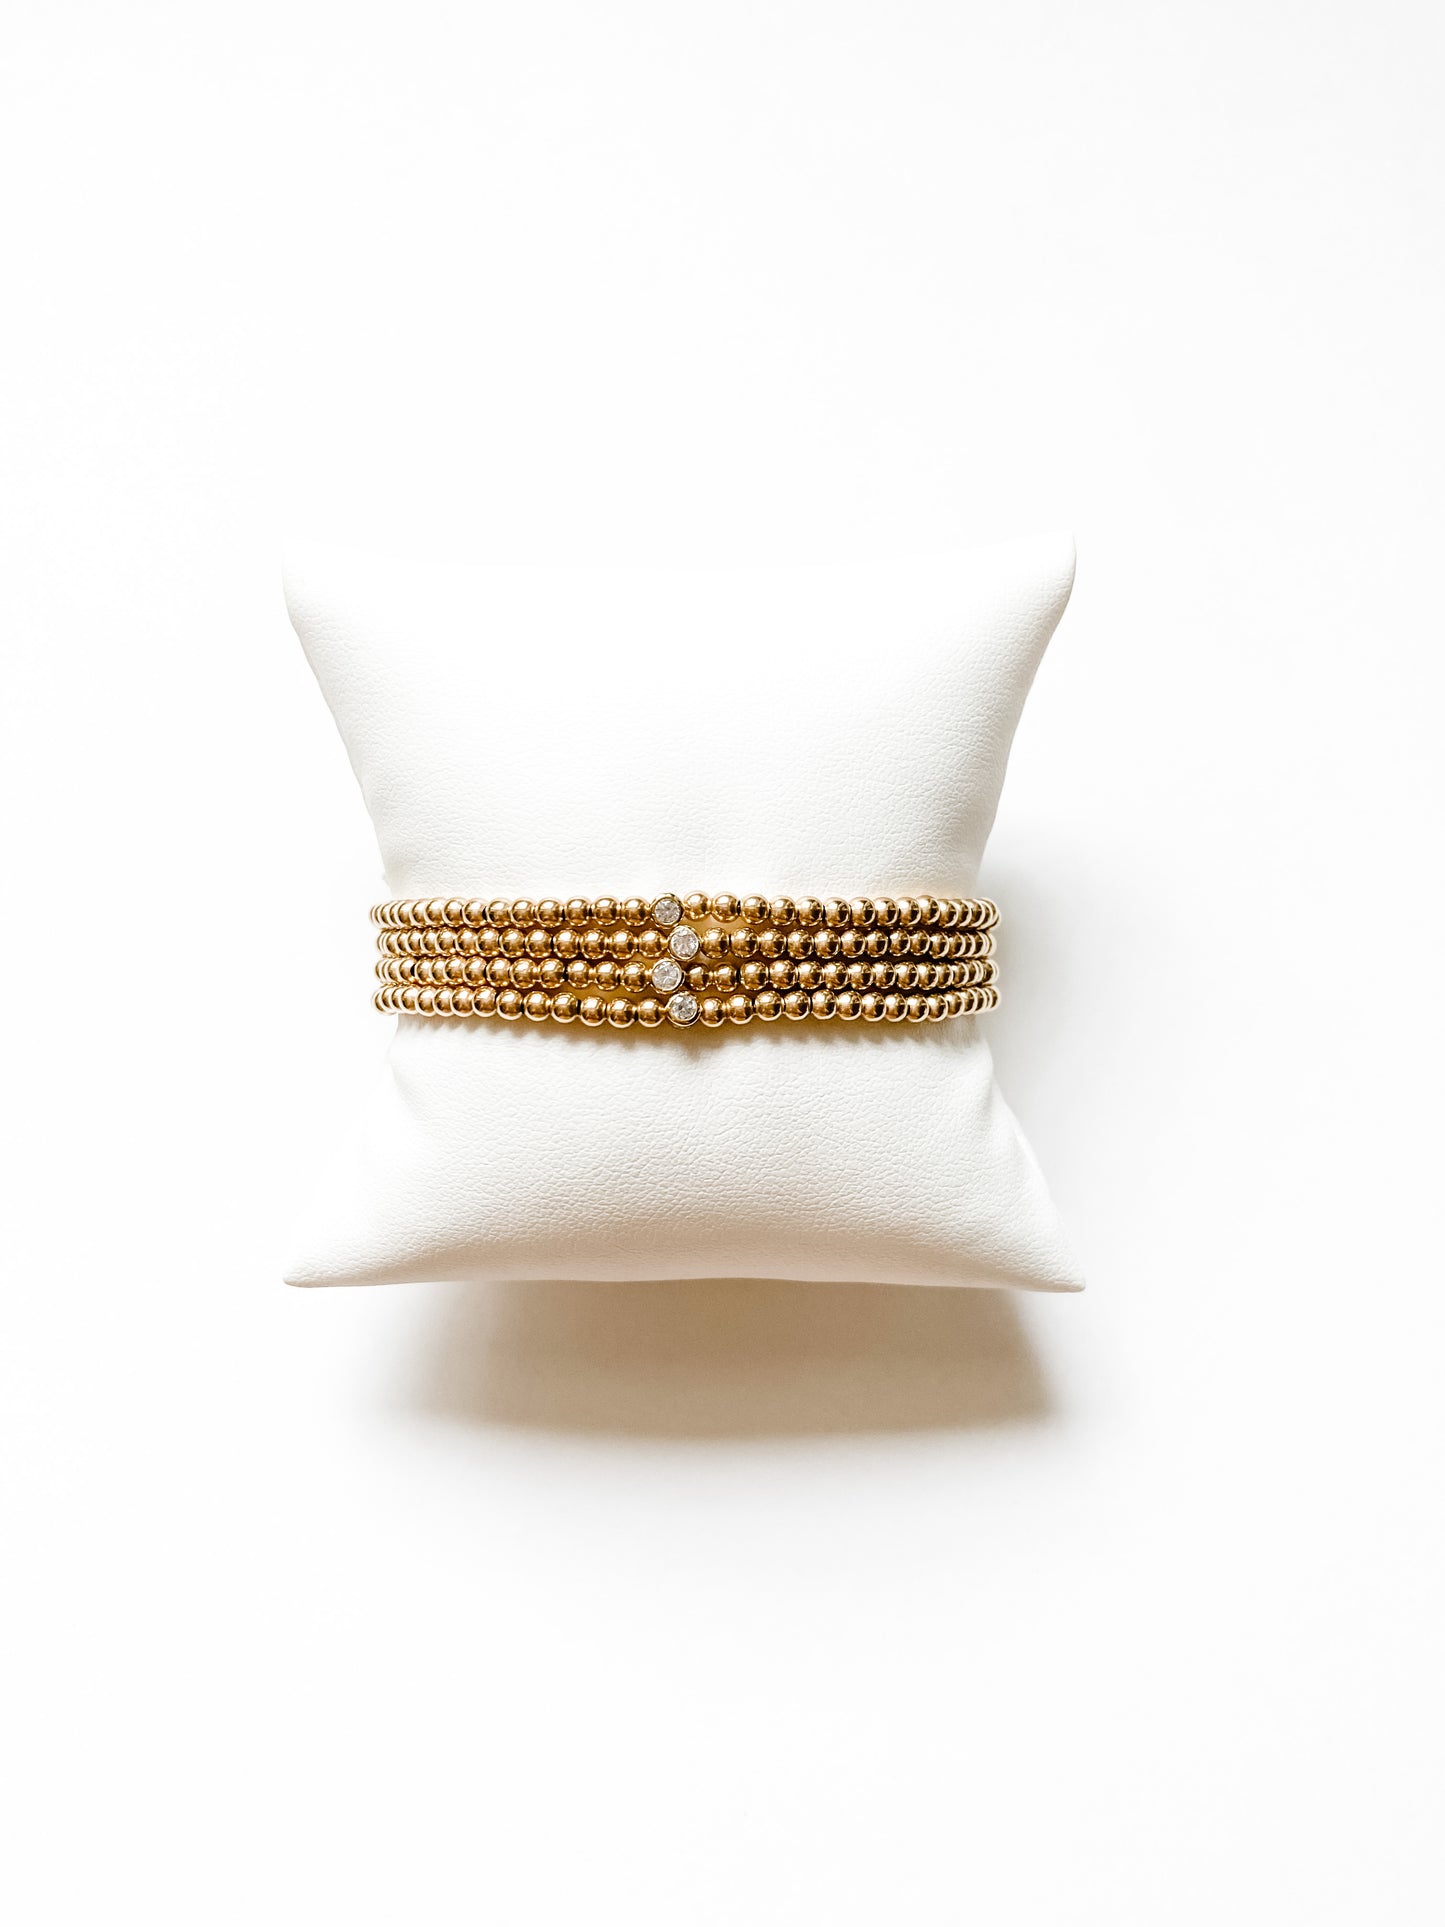 Gold Filled Solitaire Bracelet | 3mm